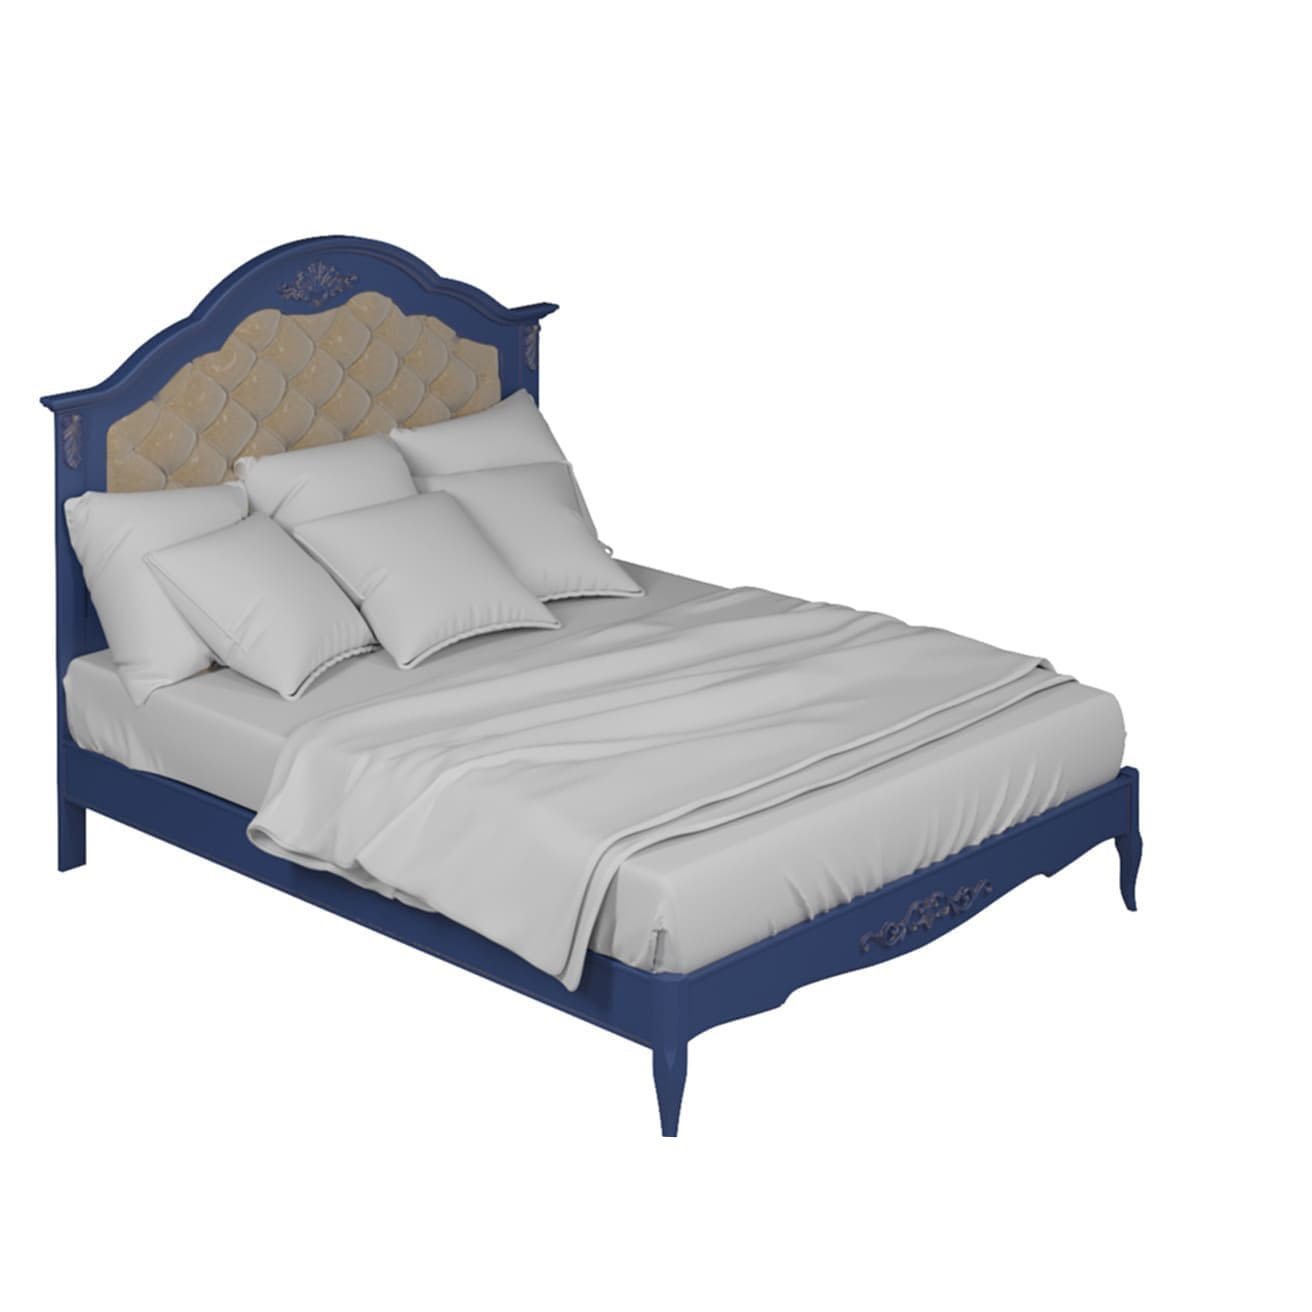 Кровать Aletan Provence, двуспальная, 160x200 см, цвет: синий (B216IN)B216IN